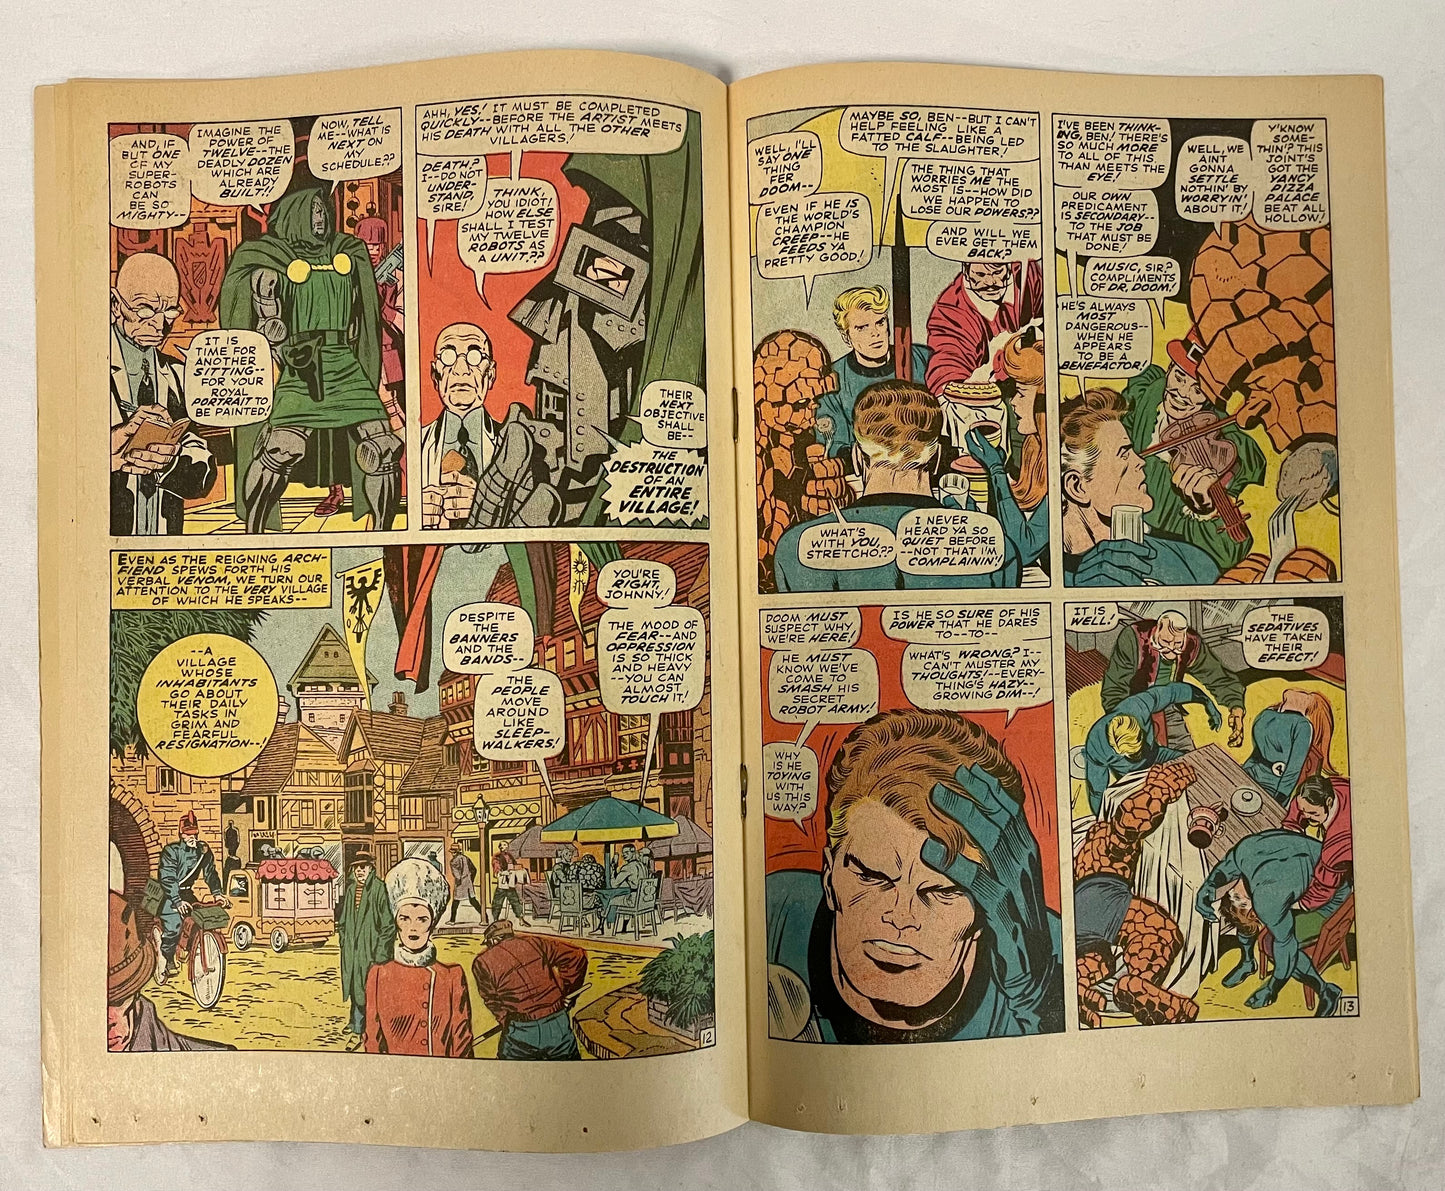 Marvel Comics Fantastic Four #85